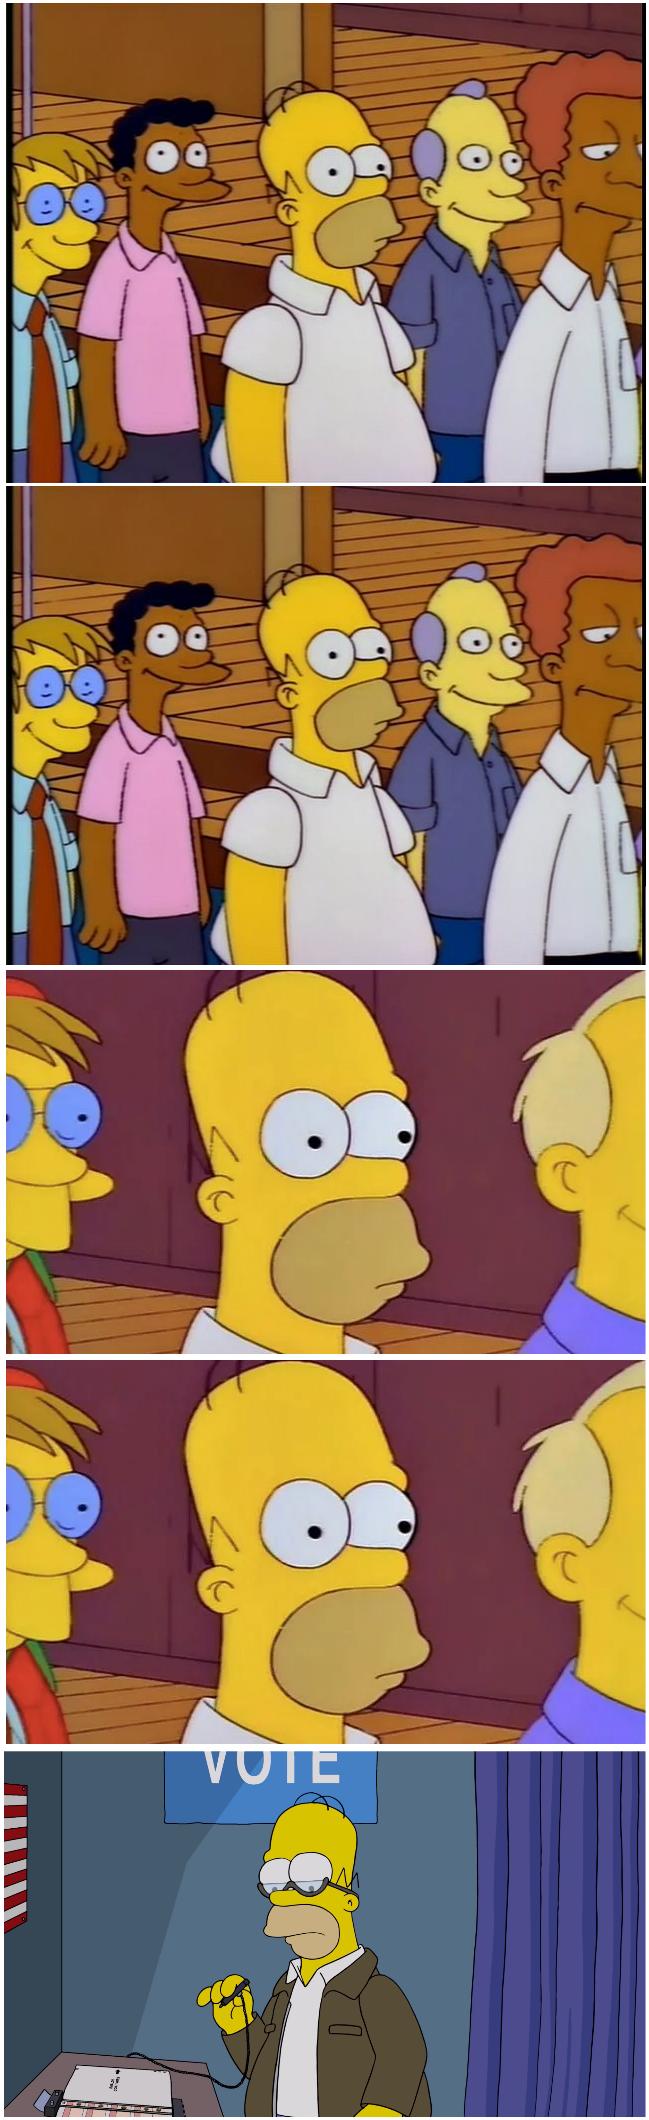 Homer Voting Blank Meme Template